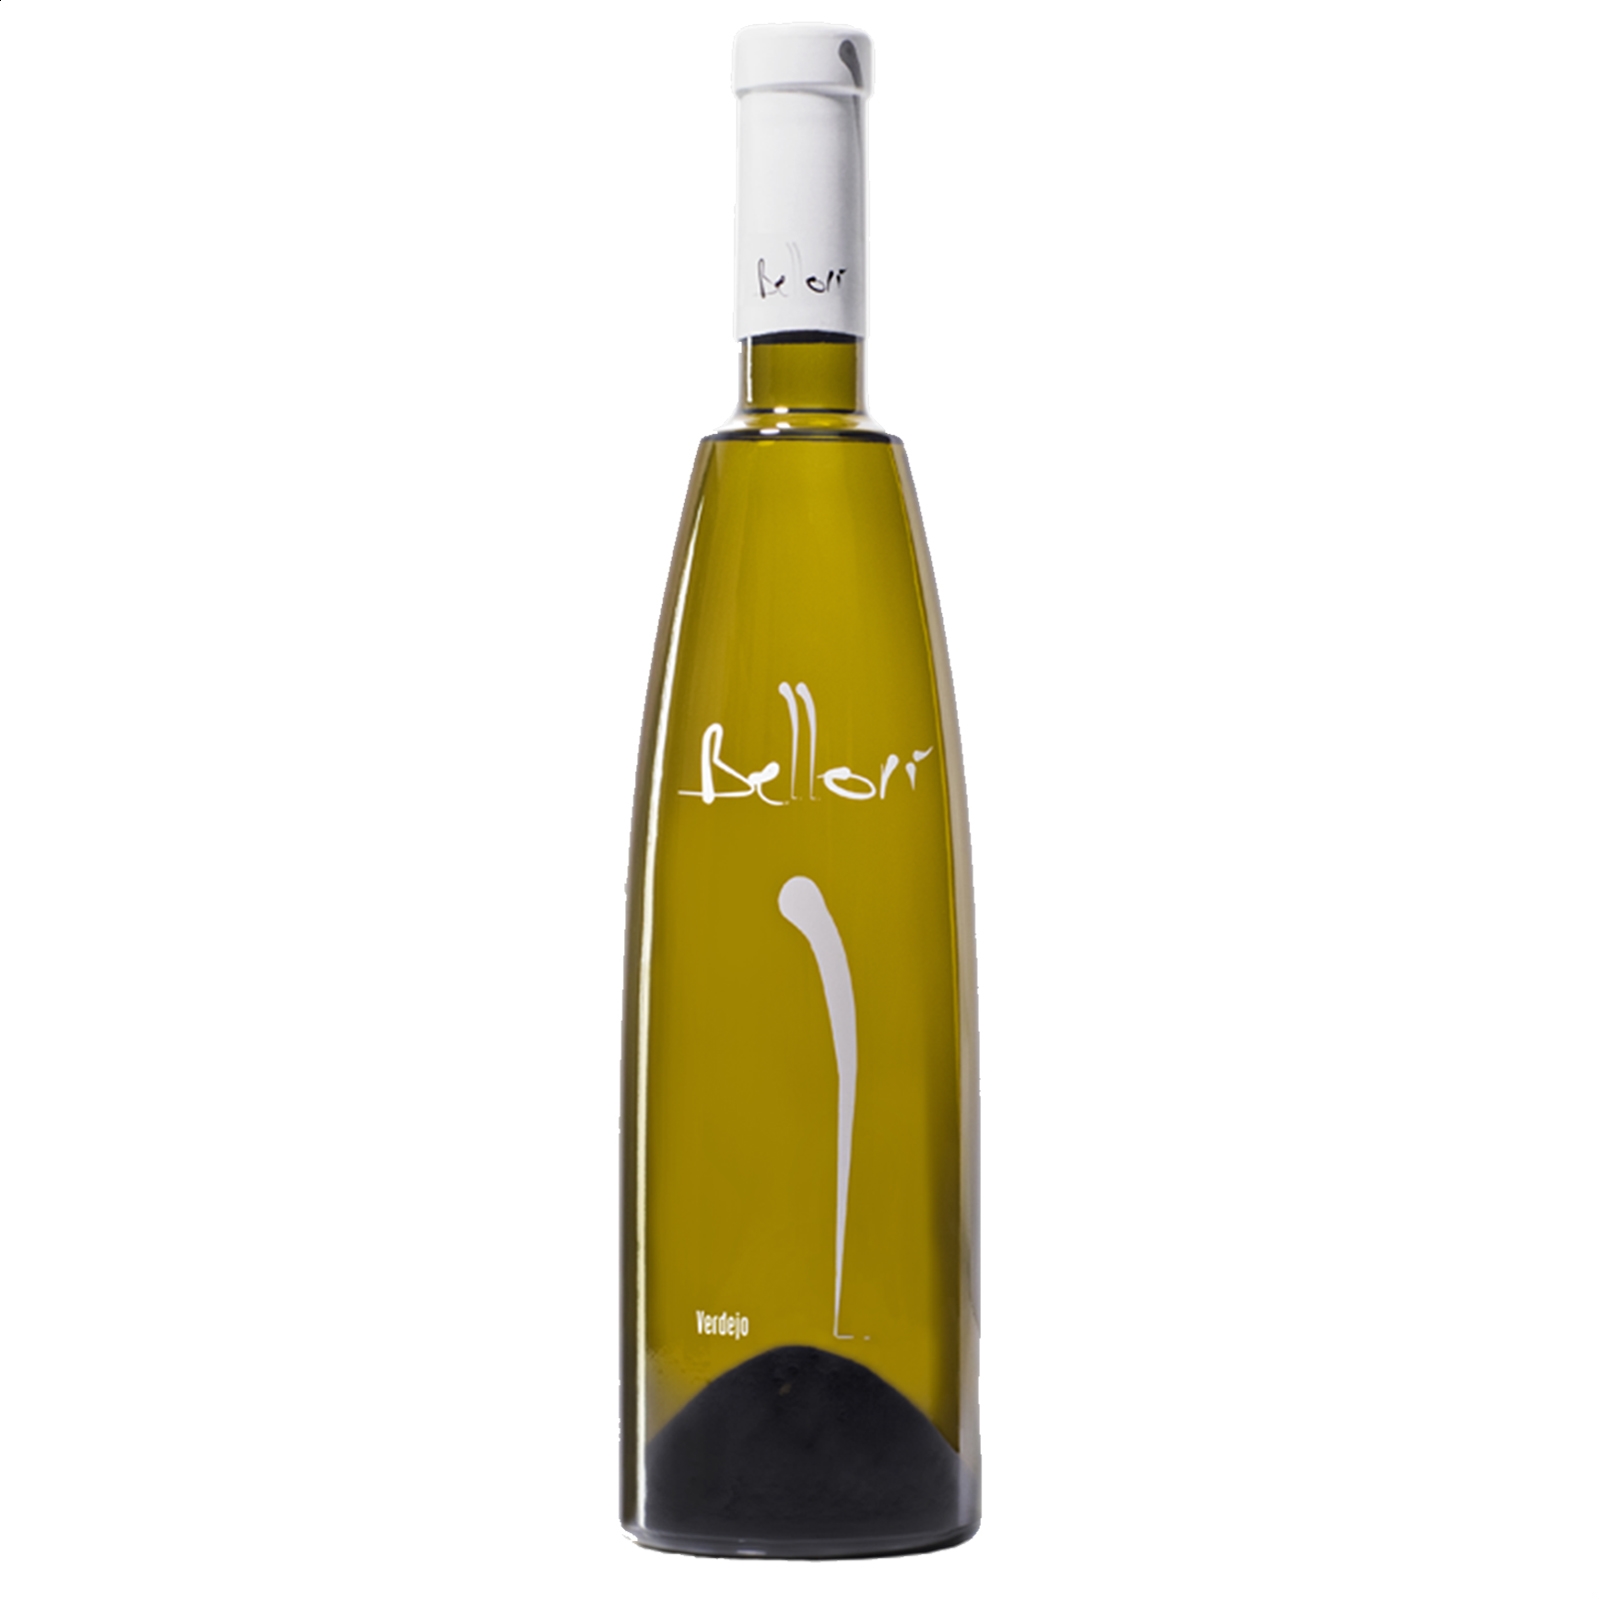 Bellori - Vino blanco Verdejo fermentado en barrica D.O. Rueda 75cl, 3uds